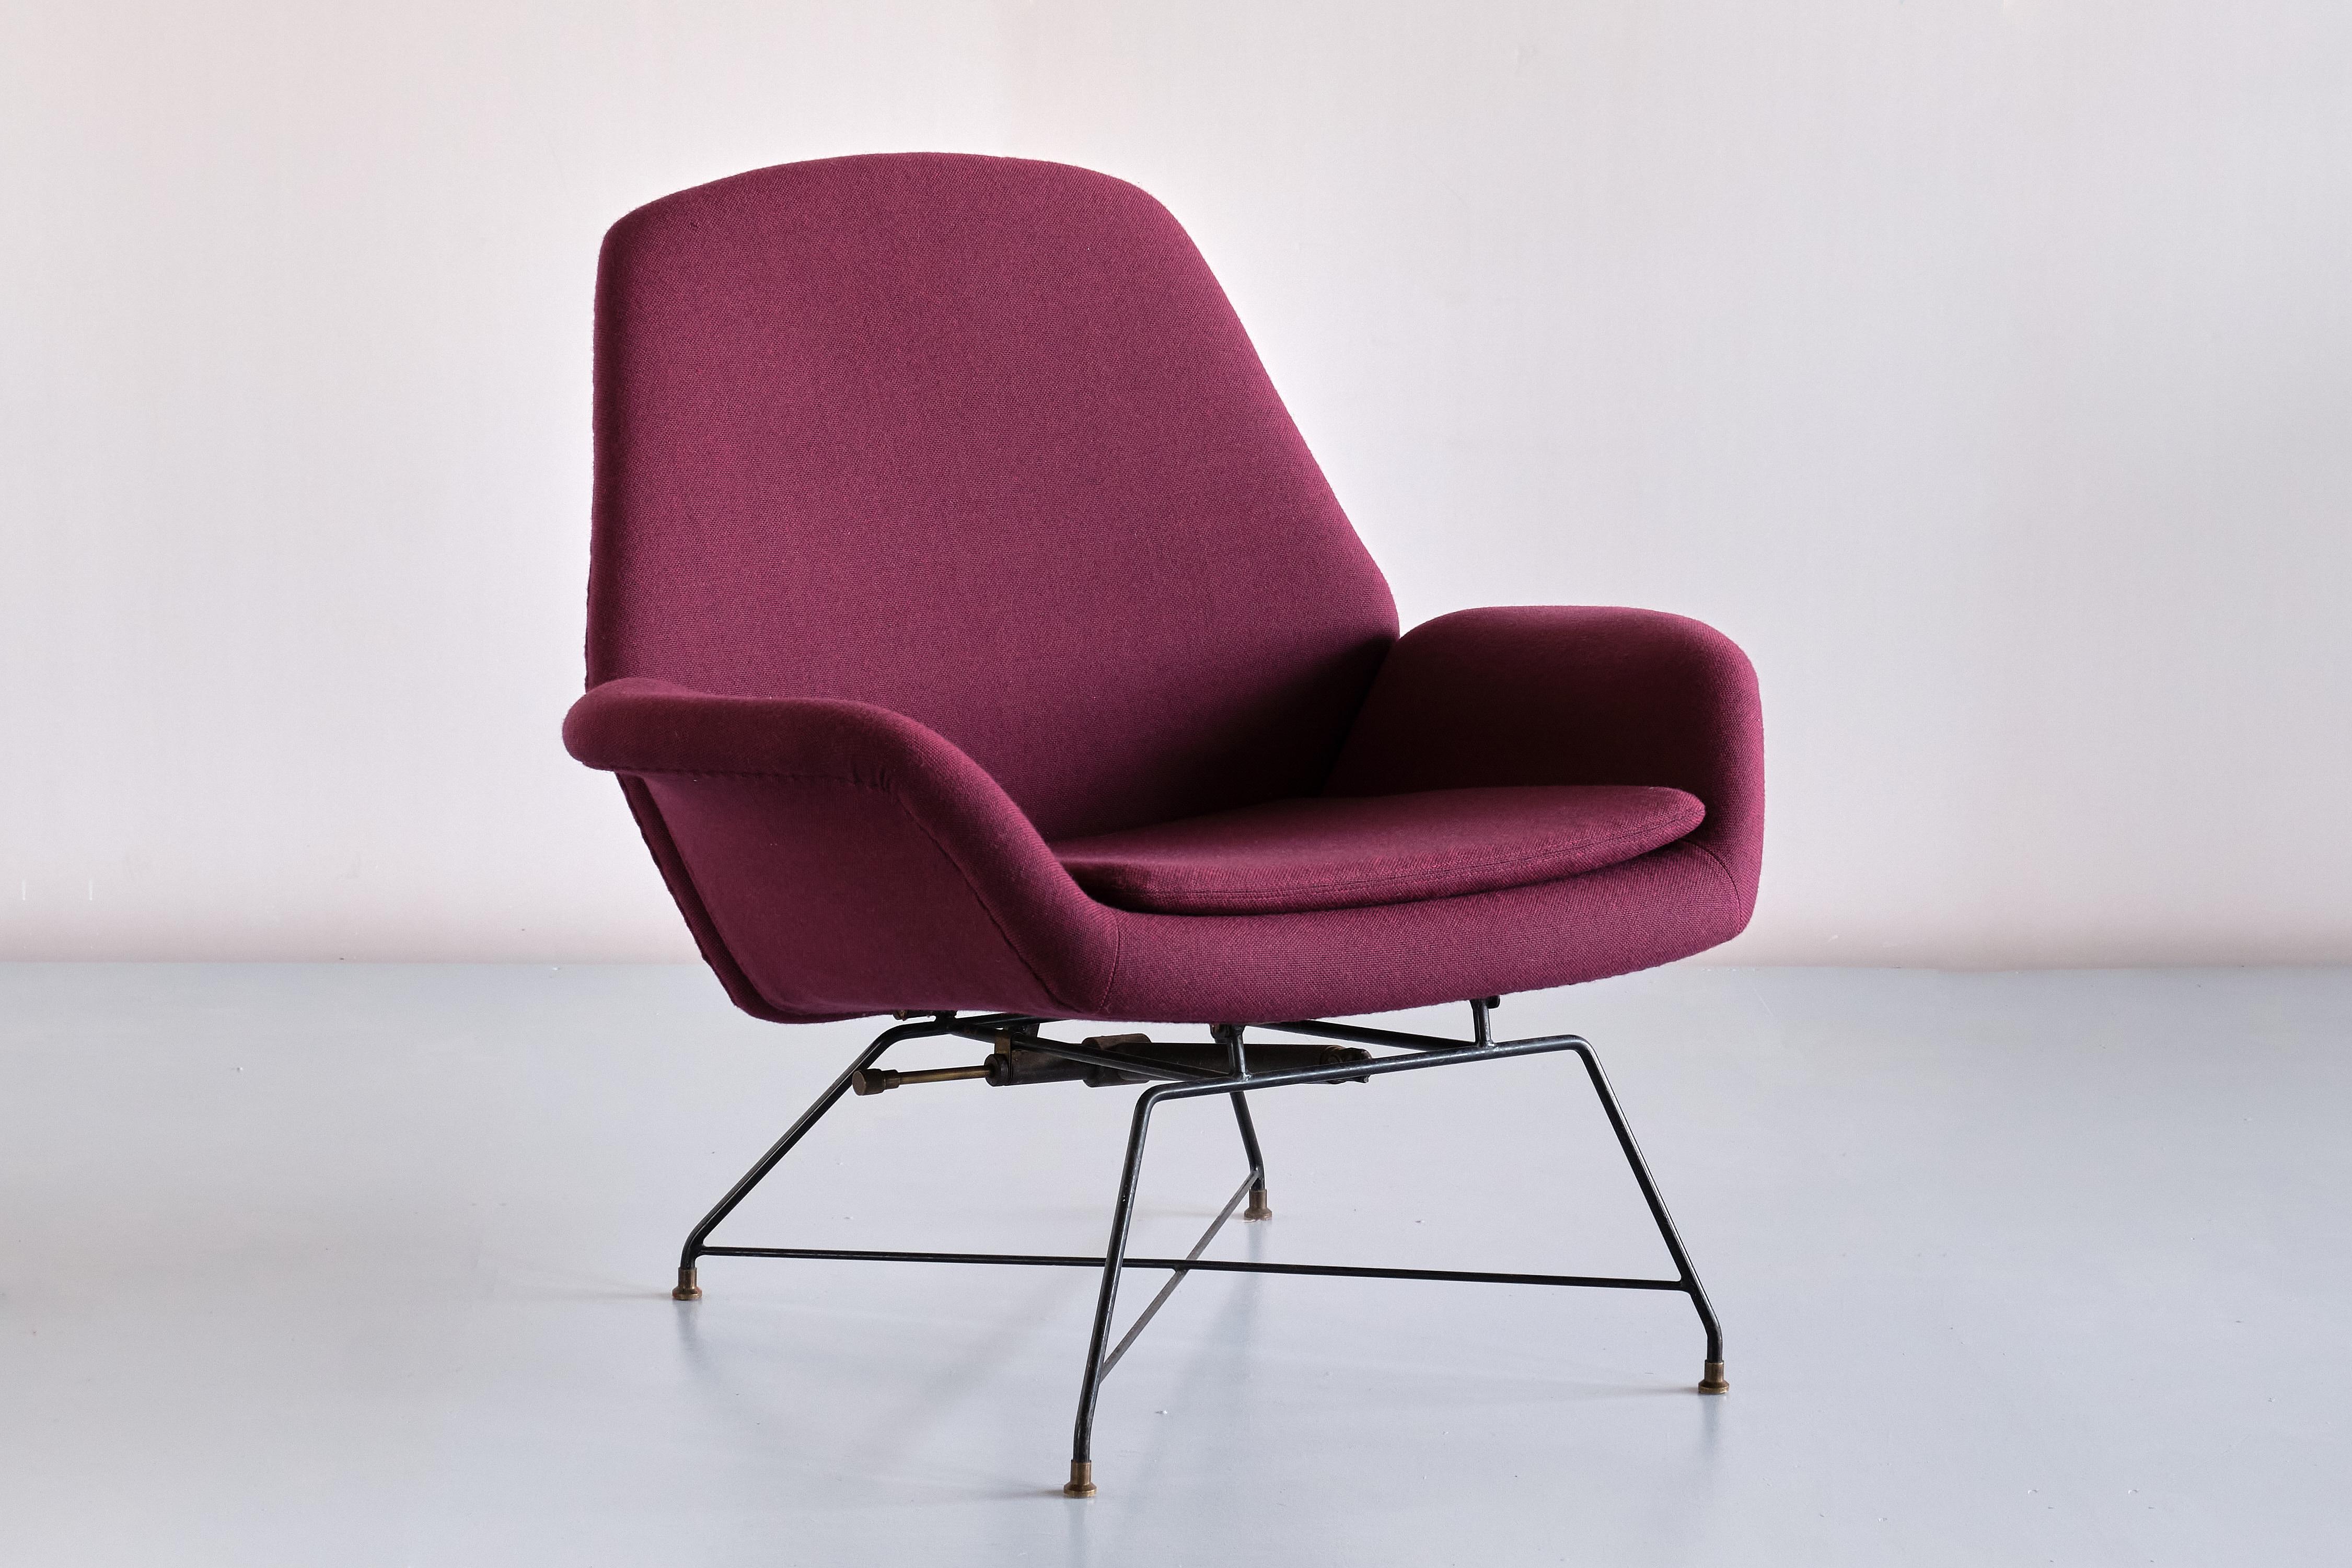 Cette chaise longue rare a été conçue par Augusto Bozzi et produite par Saporiti, en Italie, au début des années 1960. Le modèle s'appelle Lotus. Le design frappant est marqué par le cadre en épingle à cheveux en métal avec une base en croix et des